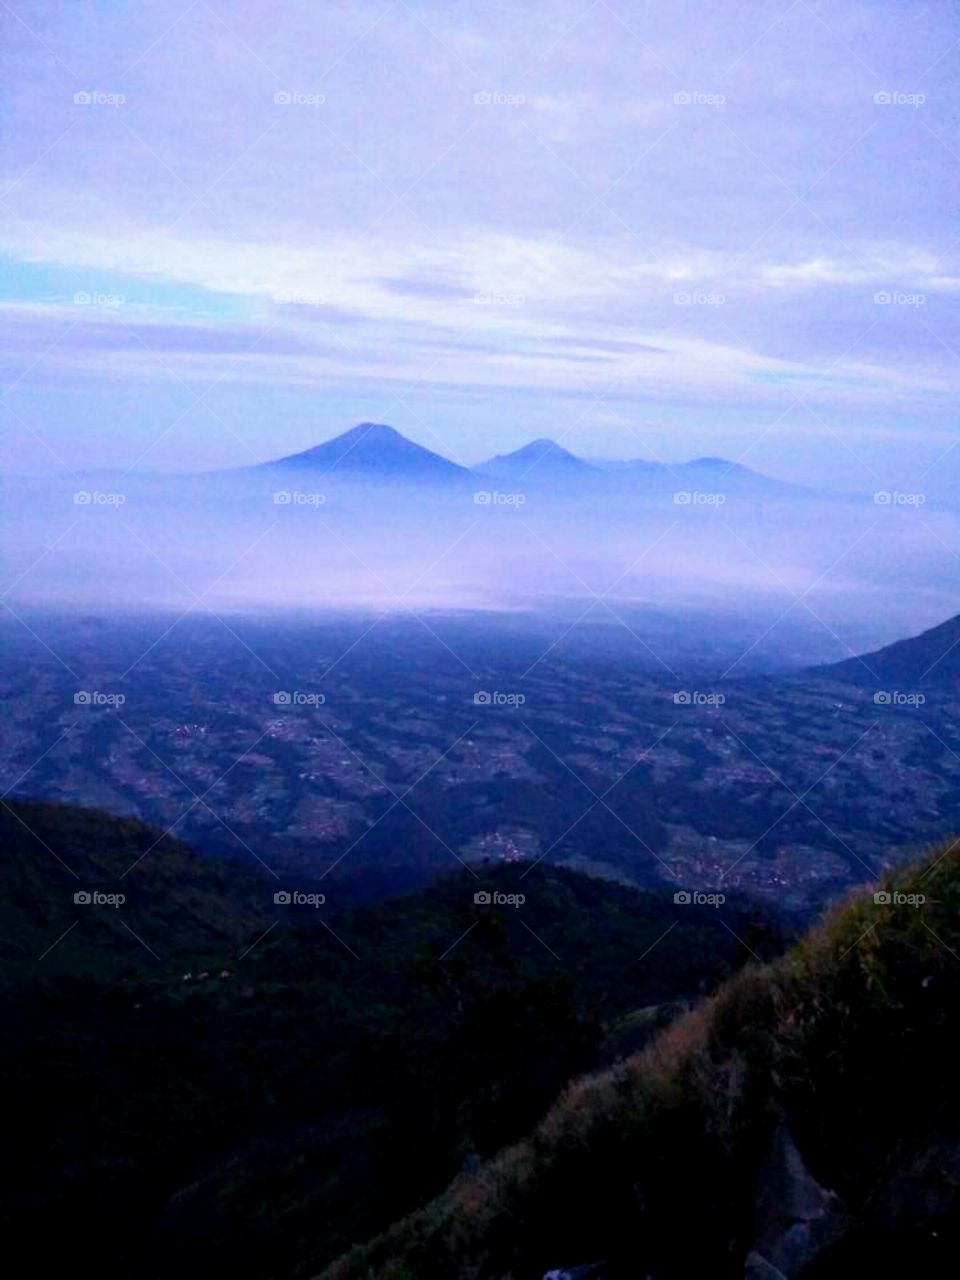 Mountain lawu, Indonesia